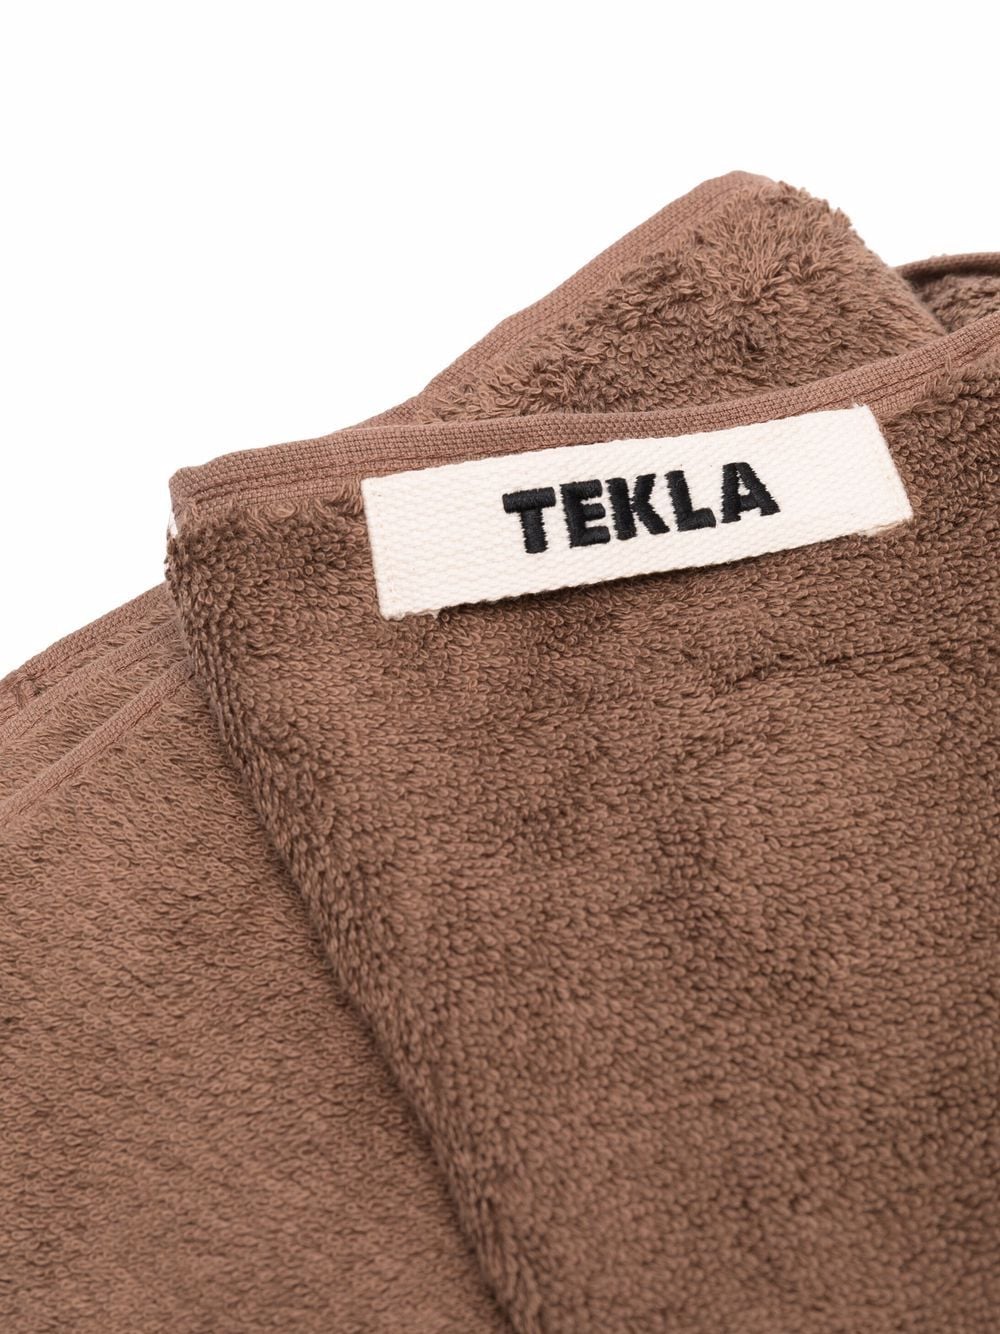 фото Tekla полотенце из органического хлопка